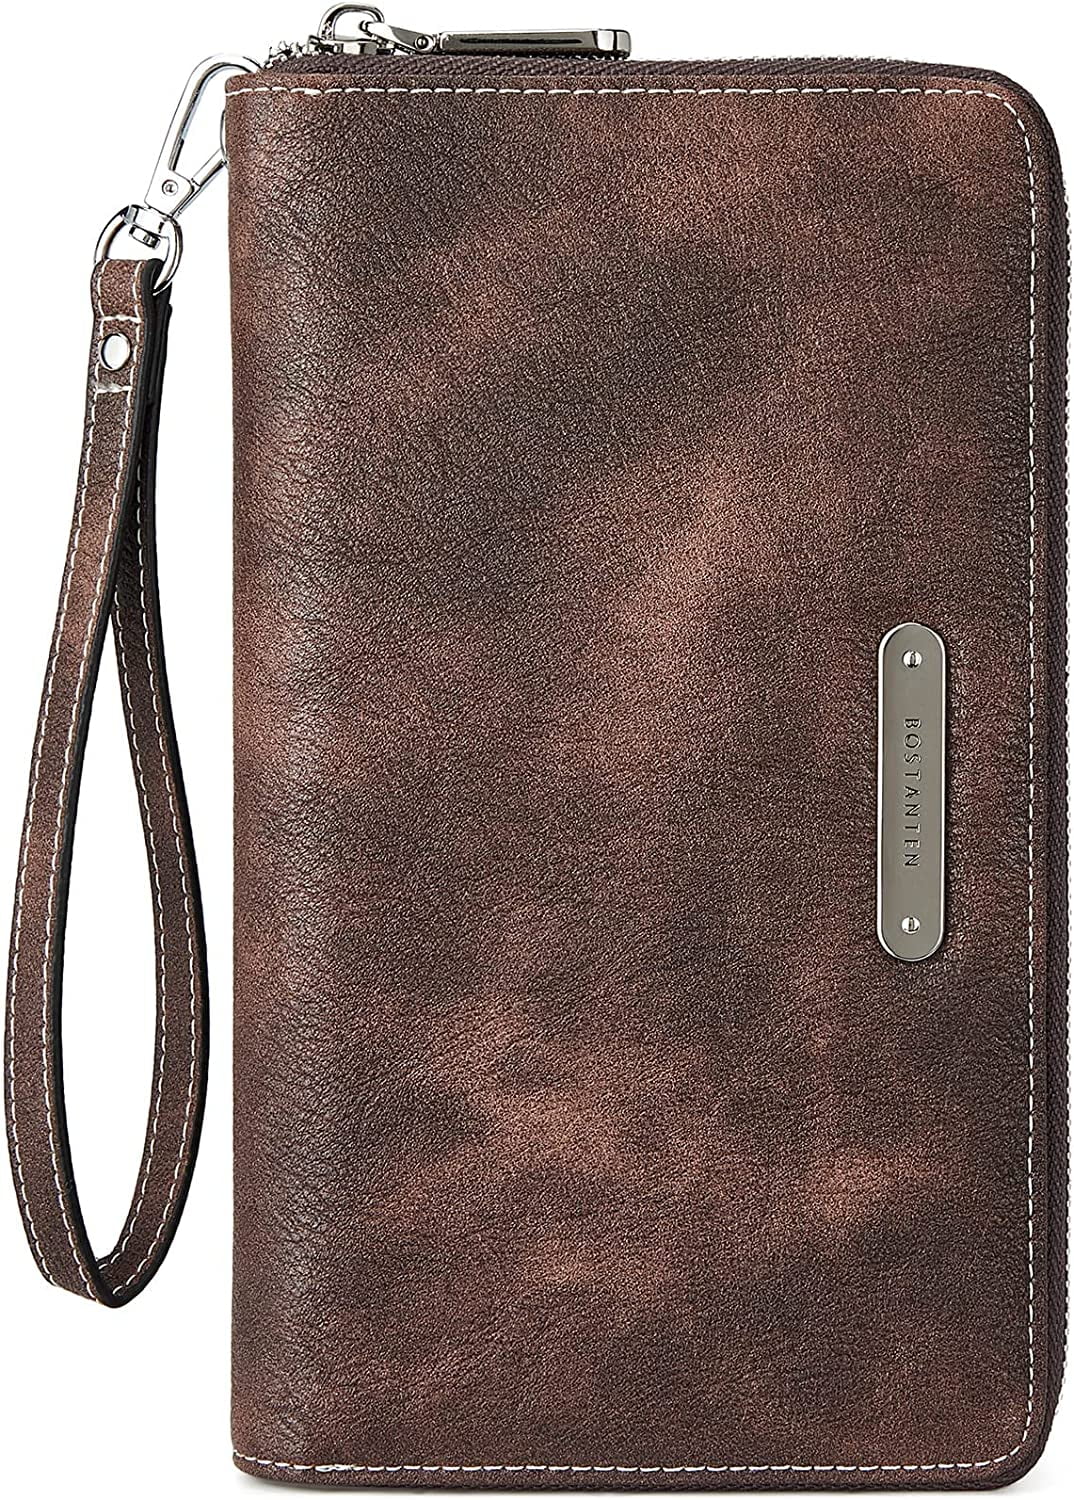 BOSTANTEN Leather Wallets for Women RFID Blocking Zip Around Credit Card Holder Phone Wristlet Clutch 